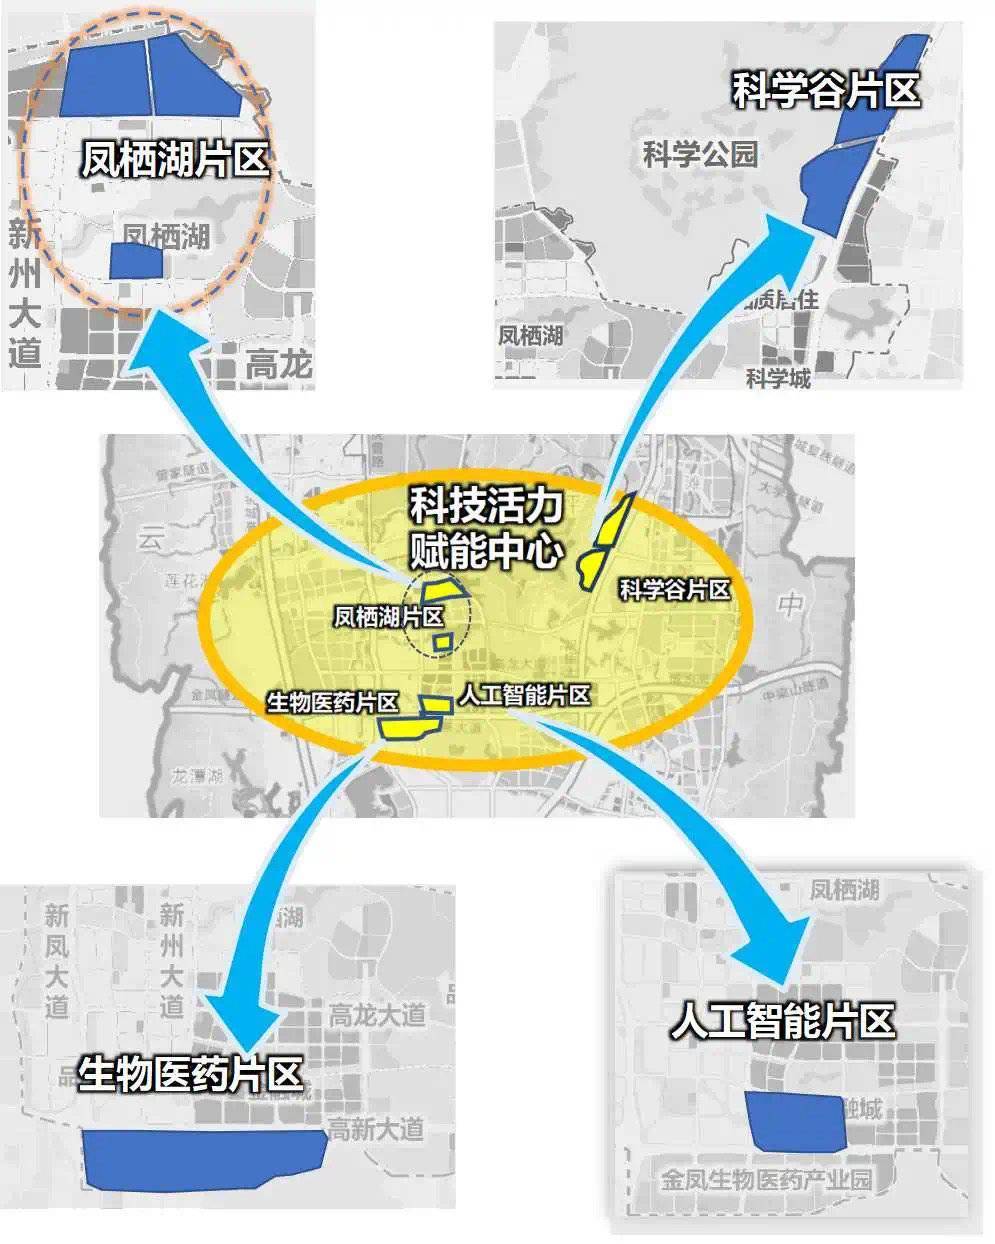 重庆高新区"十四五"科技创新发展规划出炉 西部(重庆)科学城未来可期